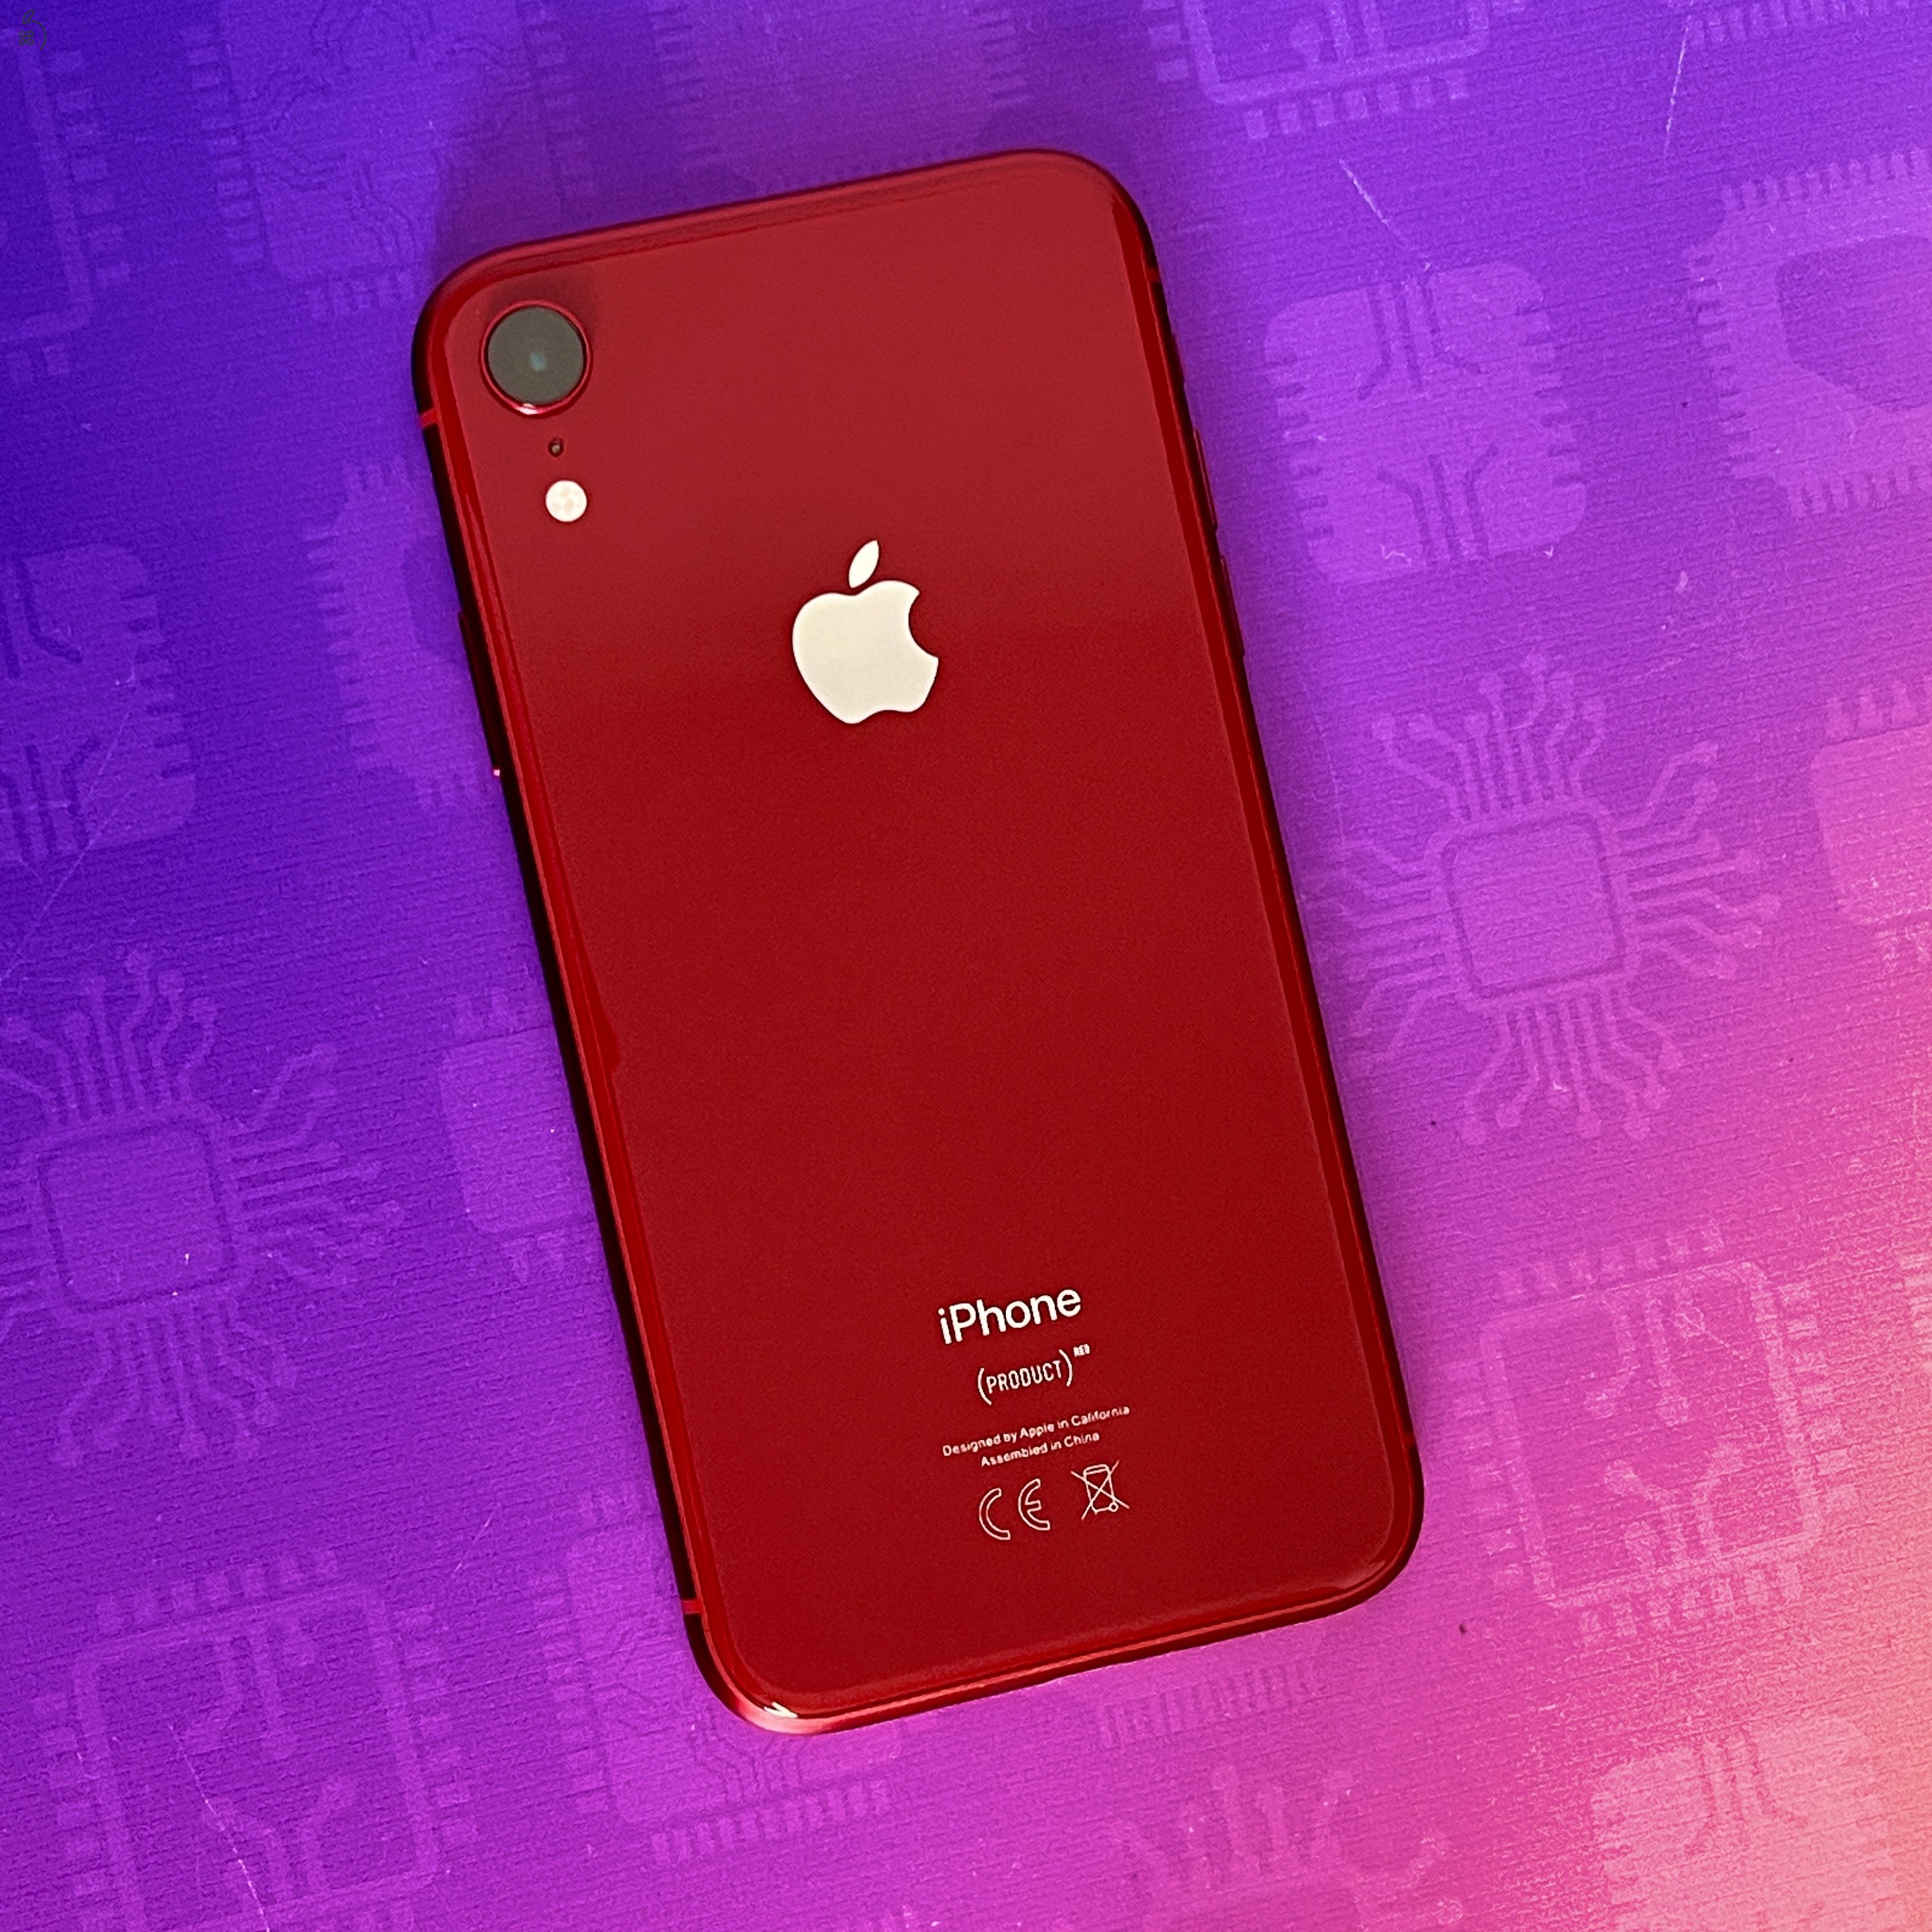 Eladó használt iPhone XR Red 256GB-os készülék 12 HÓ GARANCIA / Kód: 3154 /